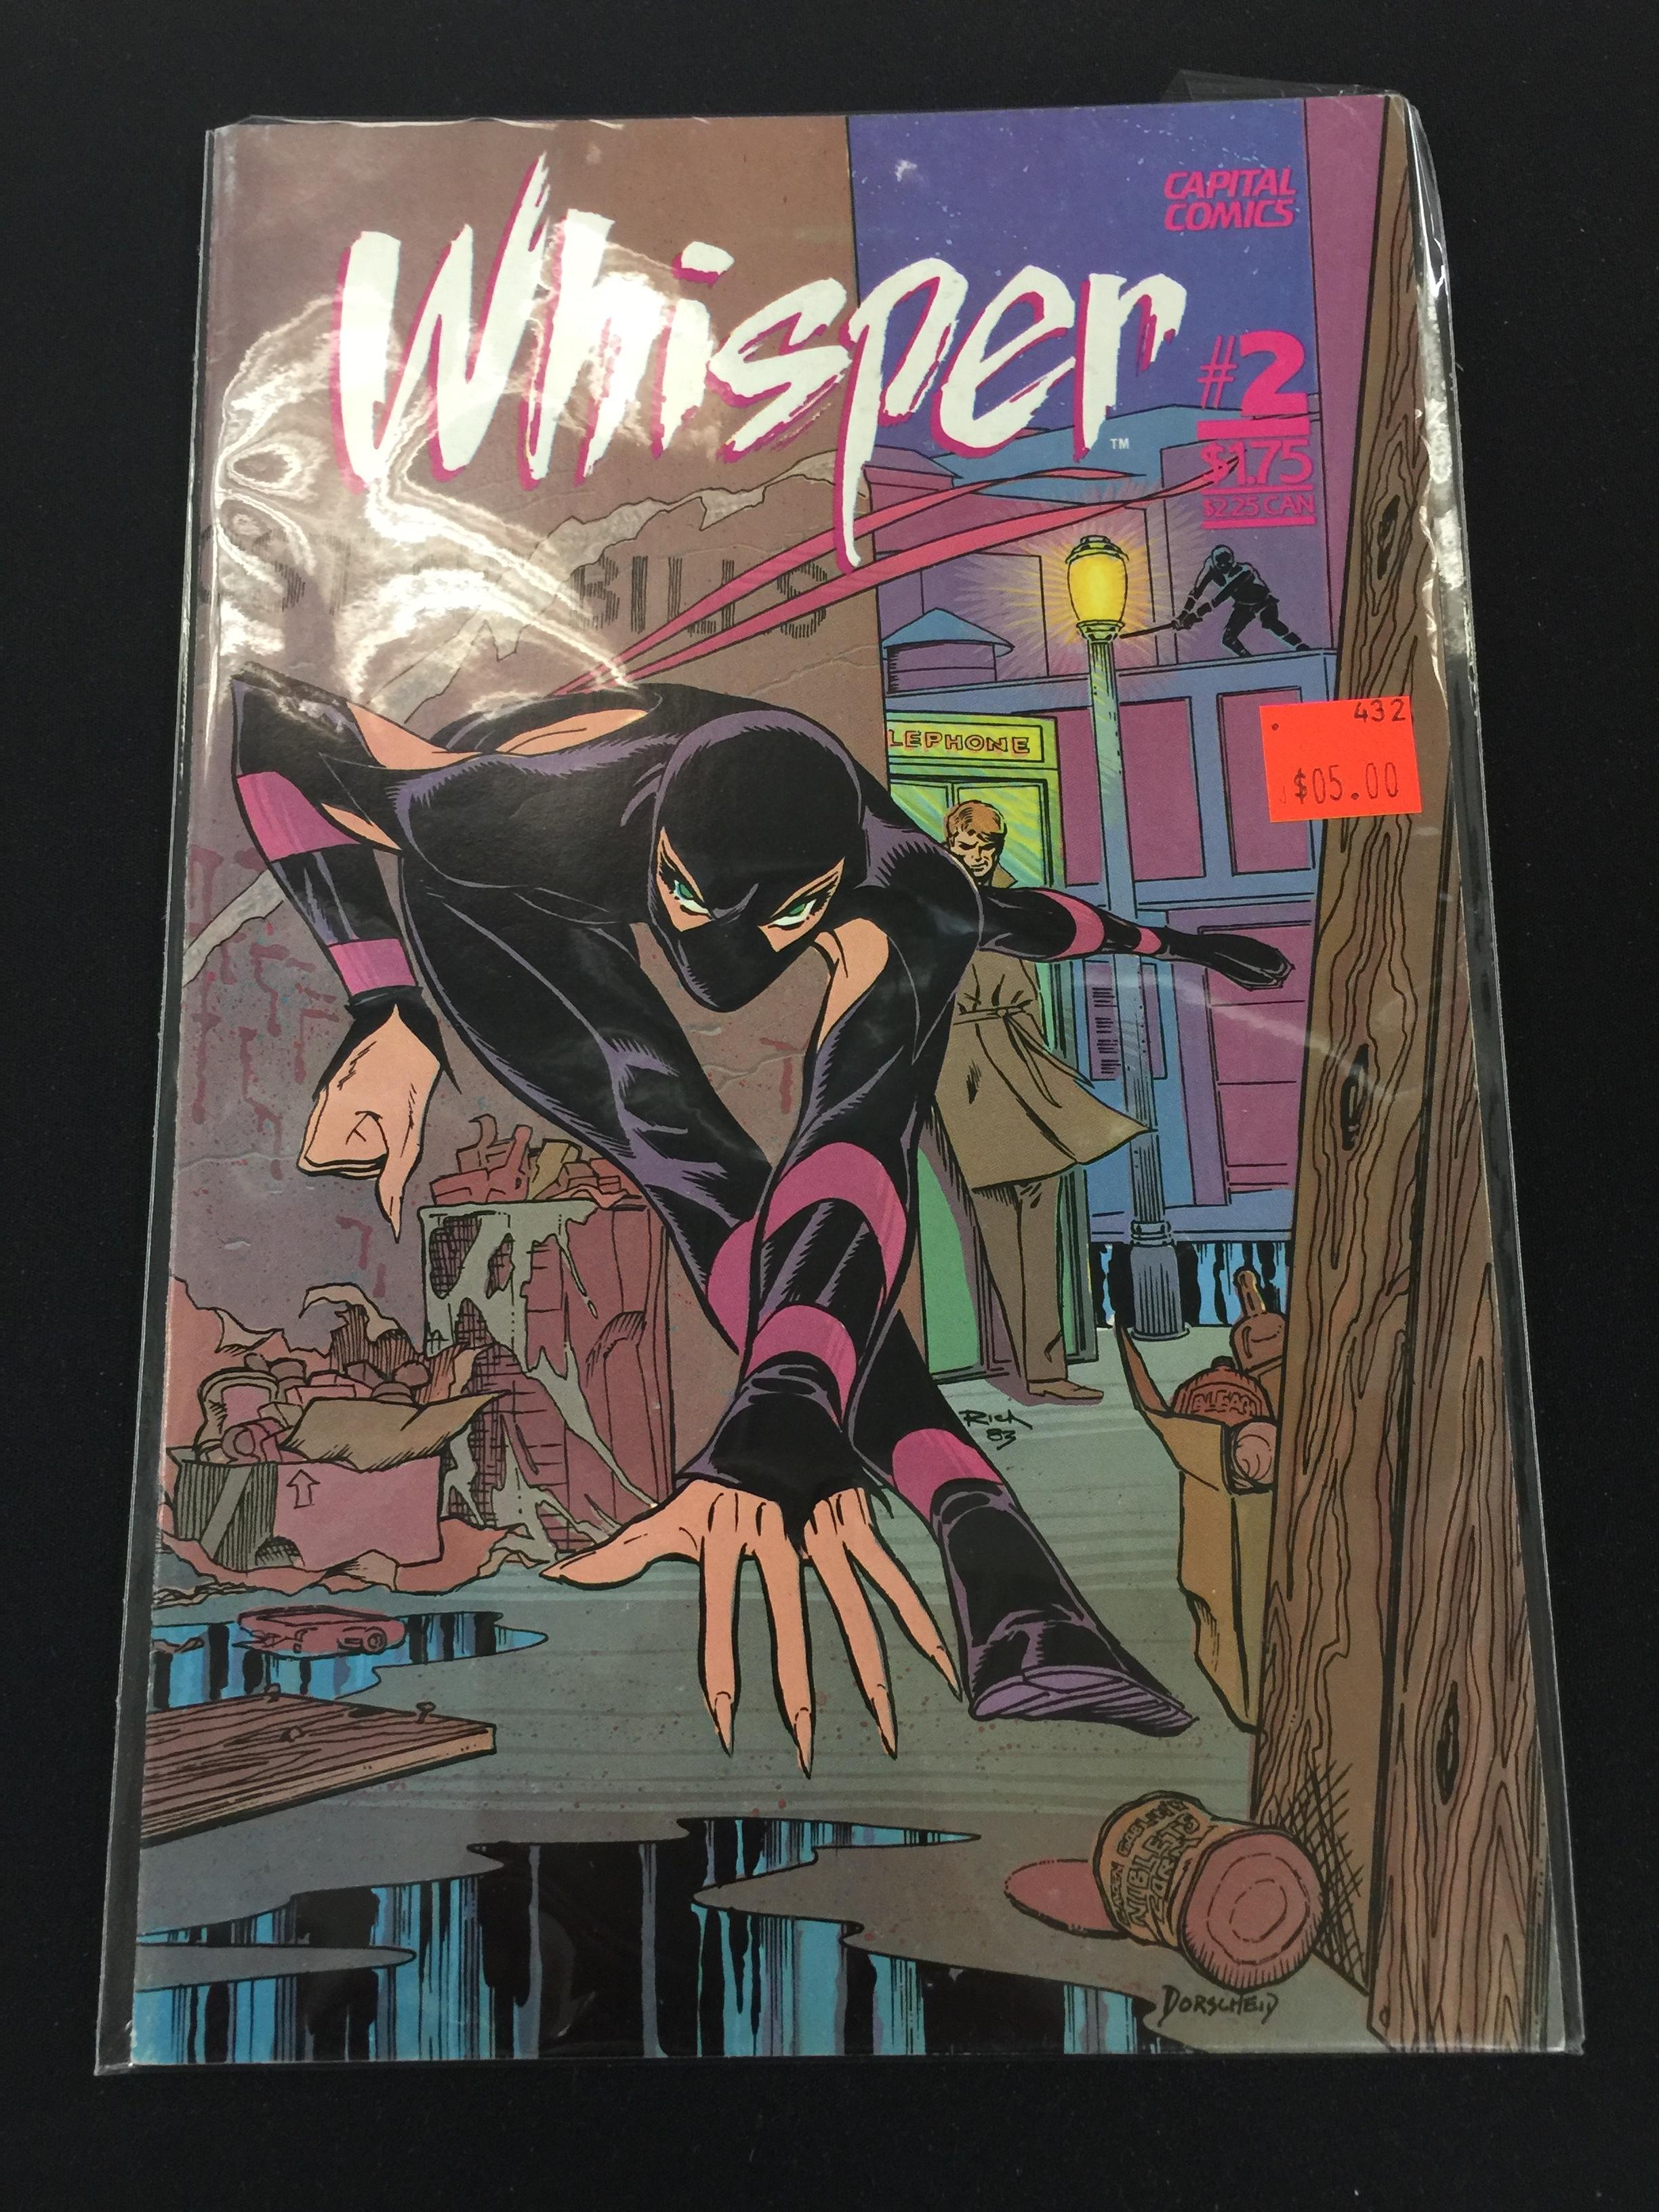 Whisper #2-Capital Comic Book